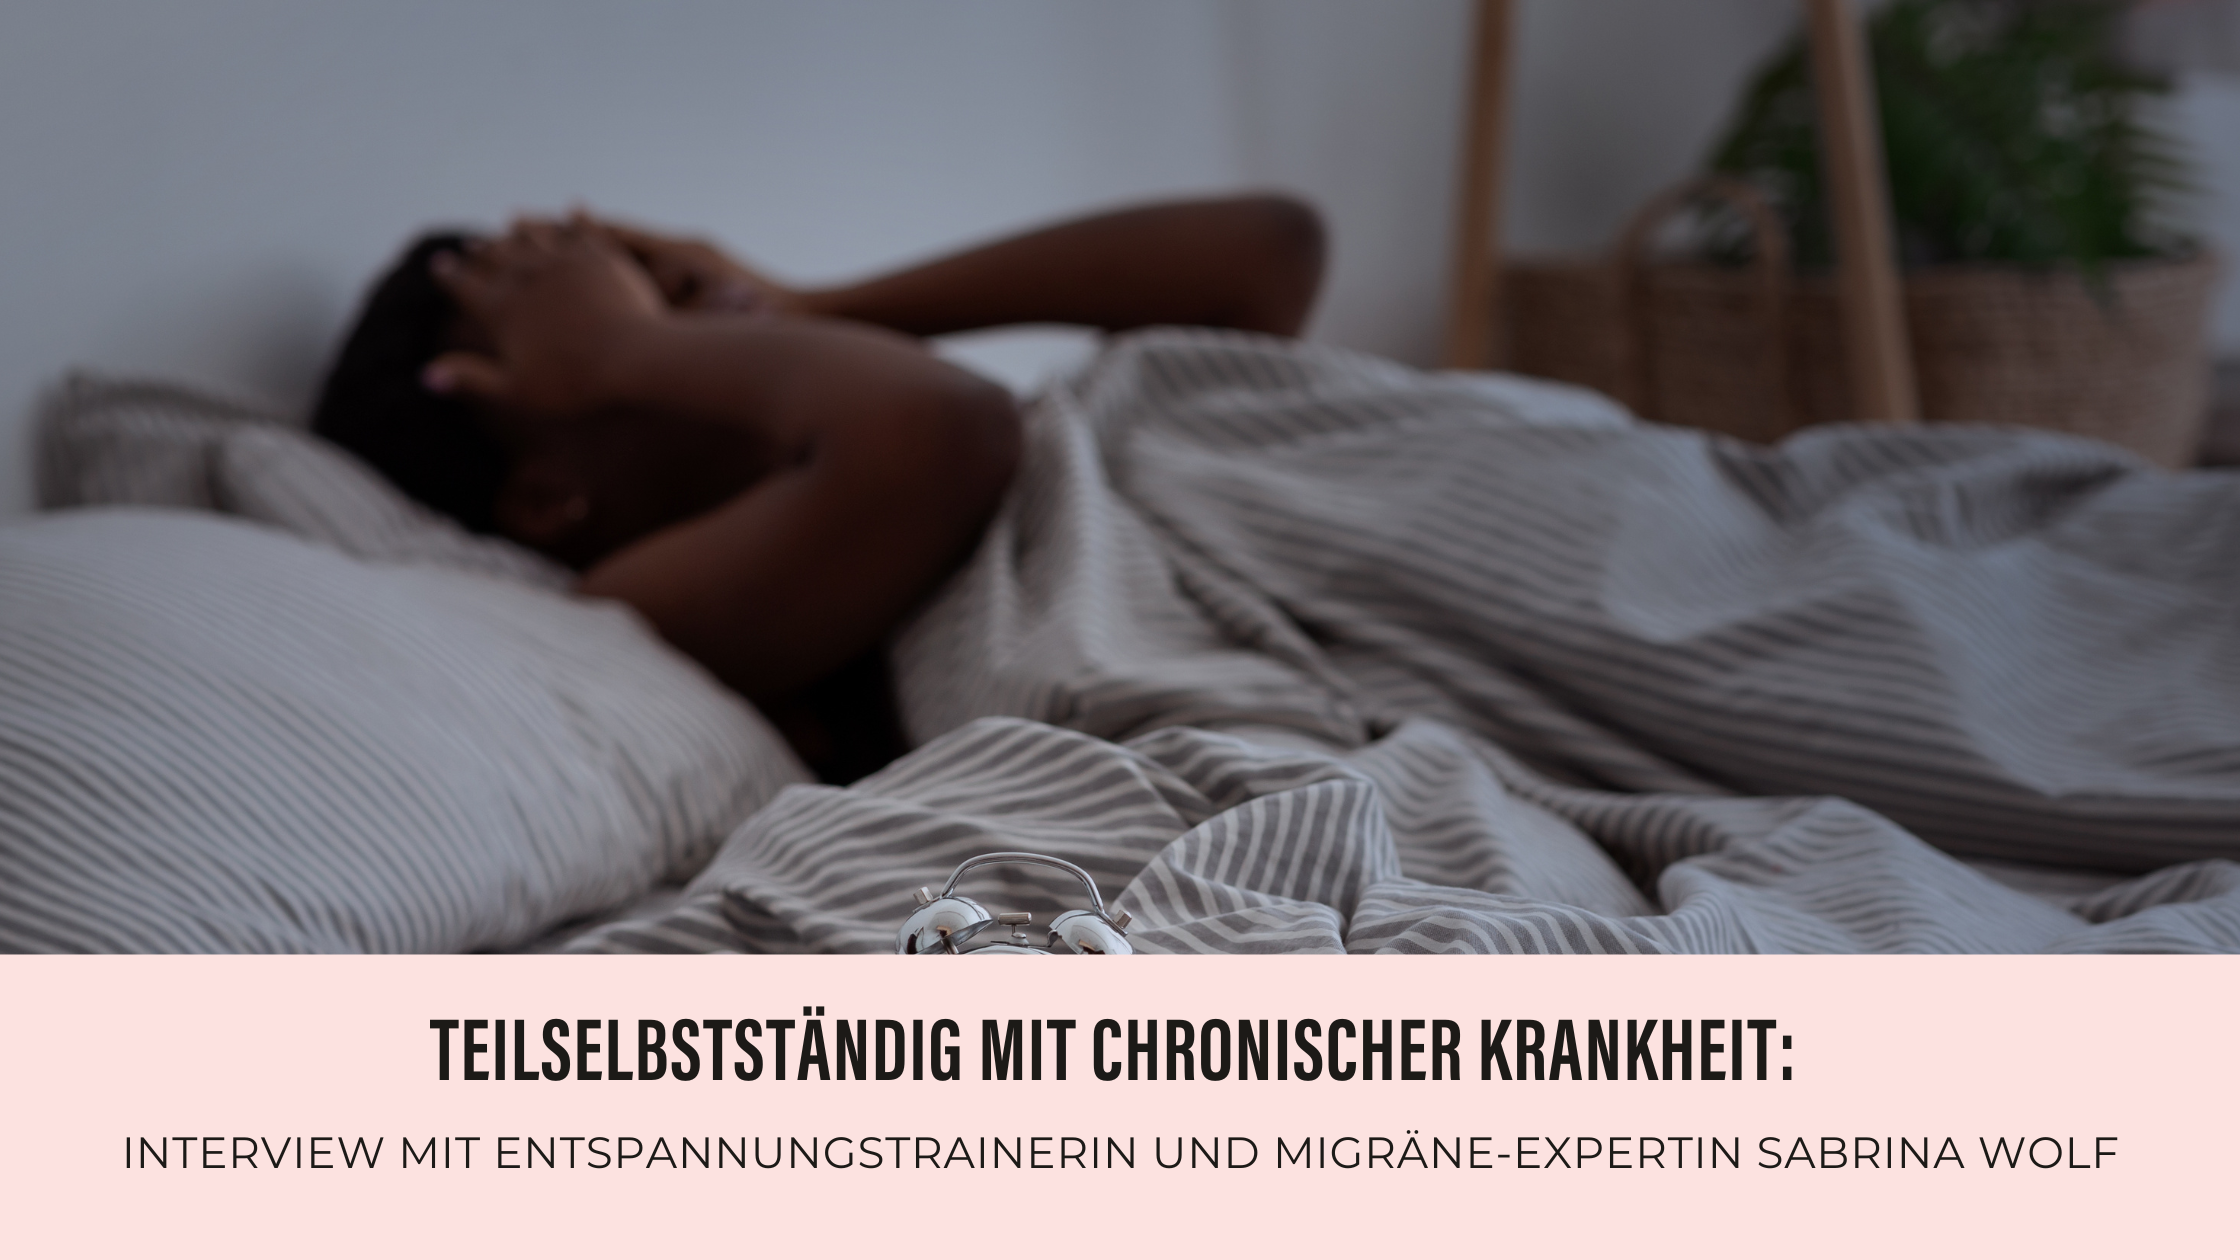 Zu sehen ist eine Frau, die im Bett liegt und die sich die Hände vor das Gesicht hält, aufgrund einer Migräne Attacke